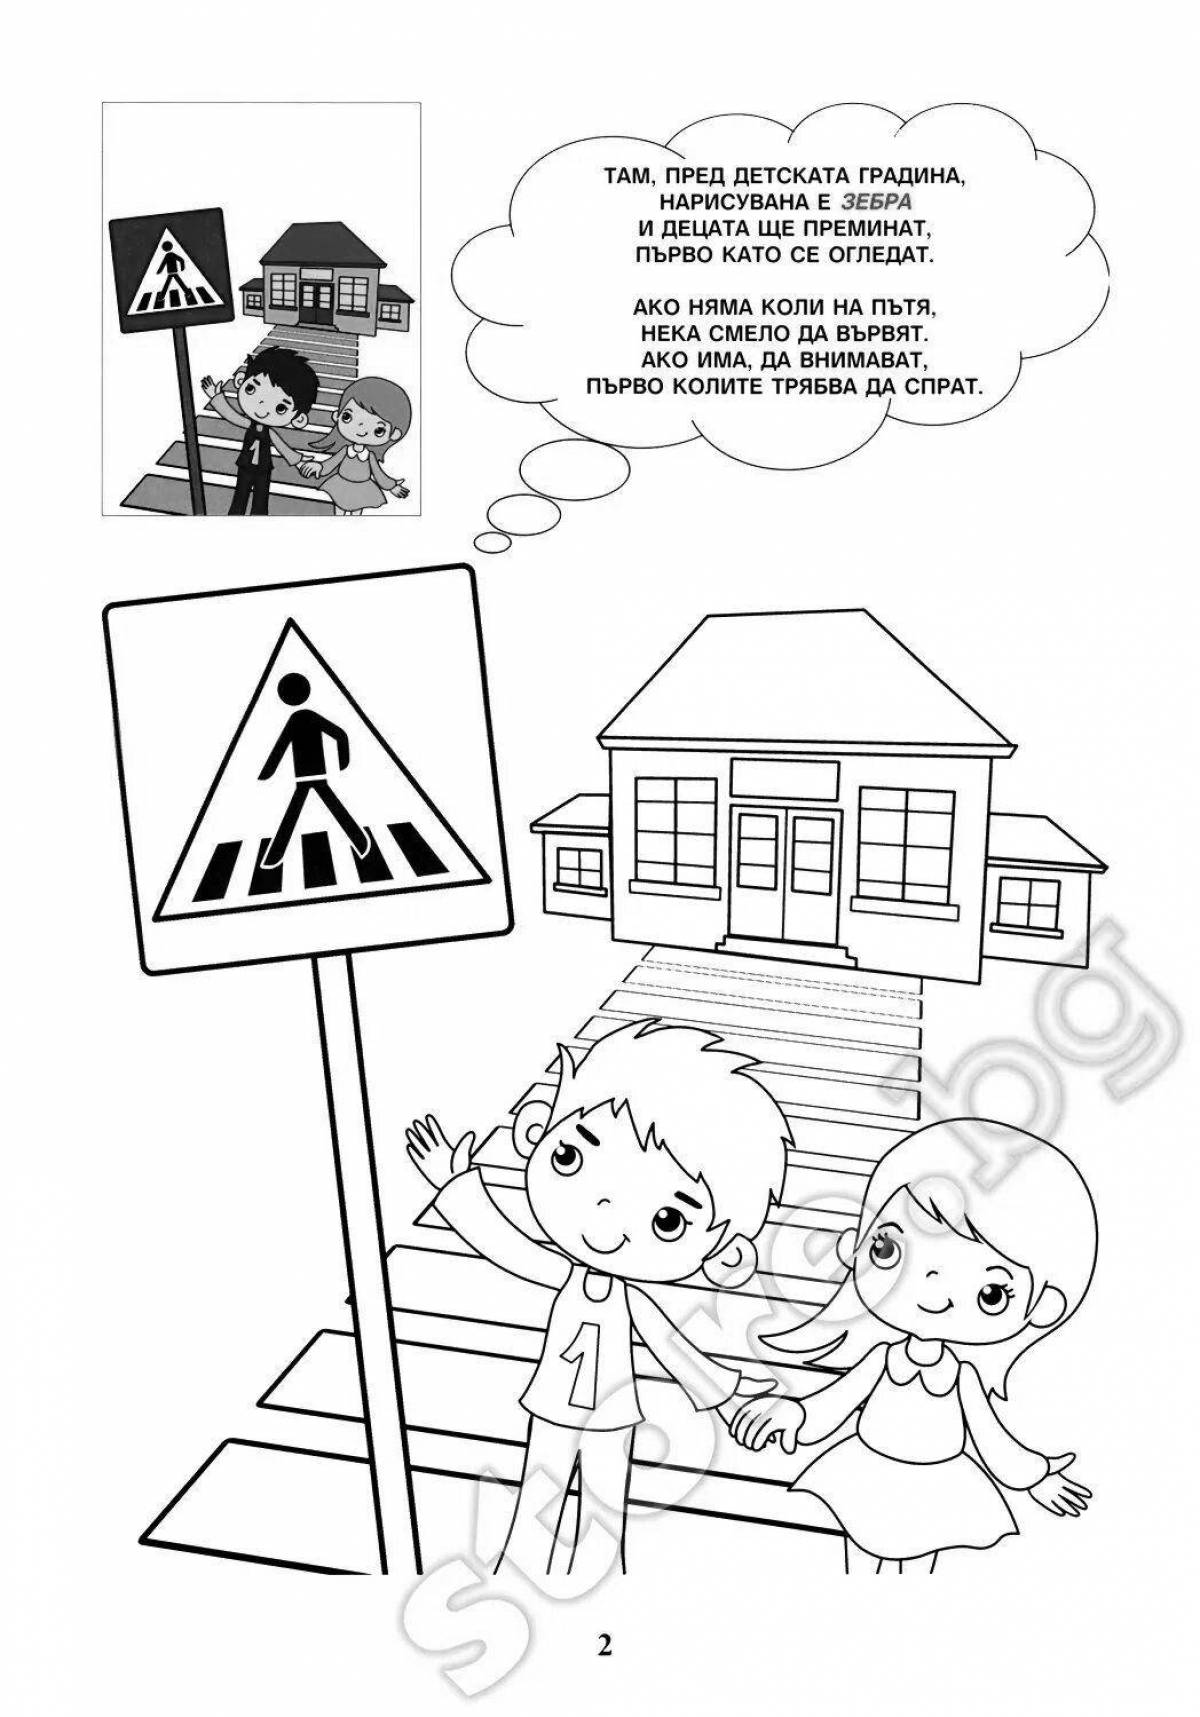 Креативные правила дорожного движения для школьников